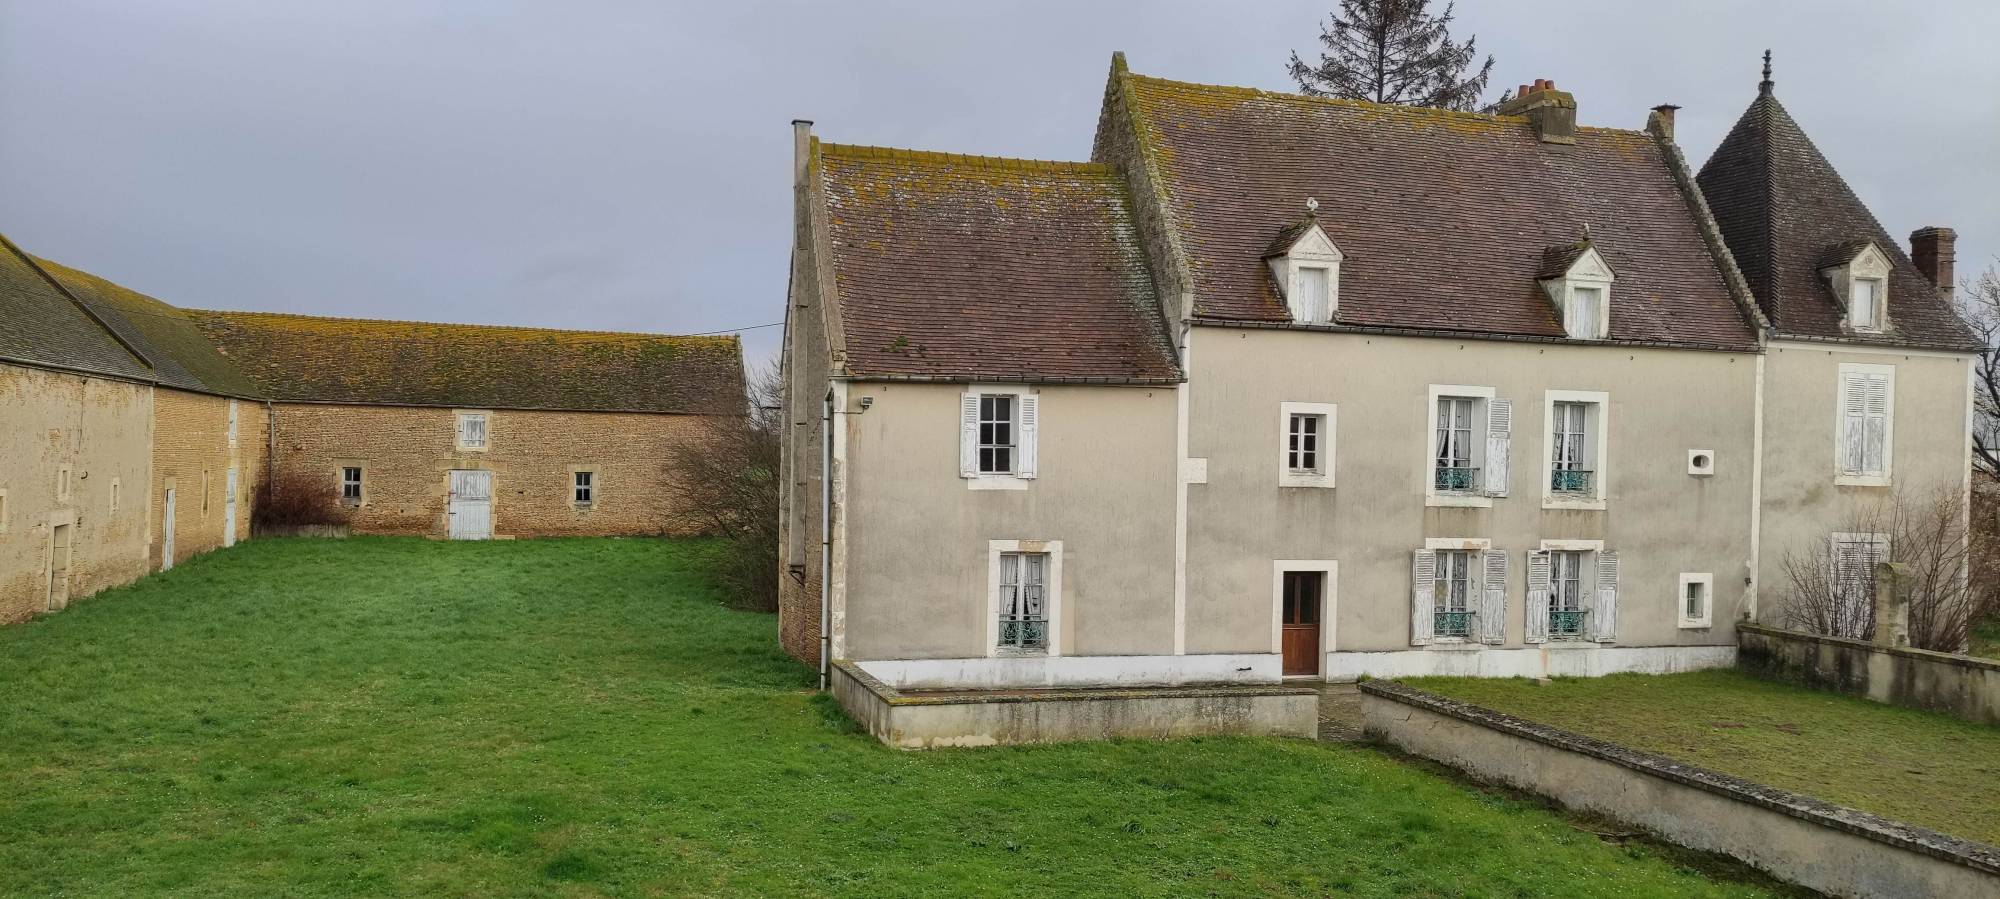 A vendre, charmant corps de ferme en pierre et ses dépendances du début XIXe entre Caen 14000 et le Pays d'Auge